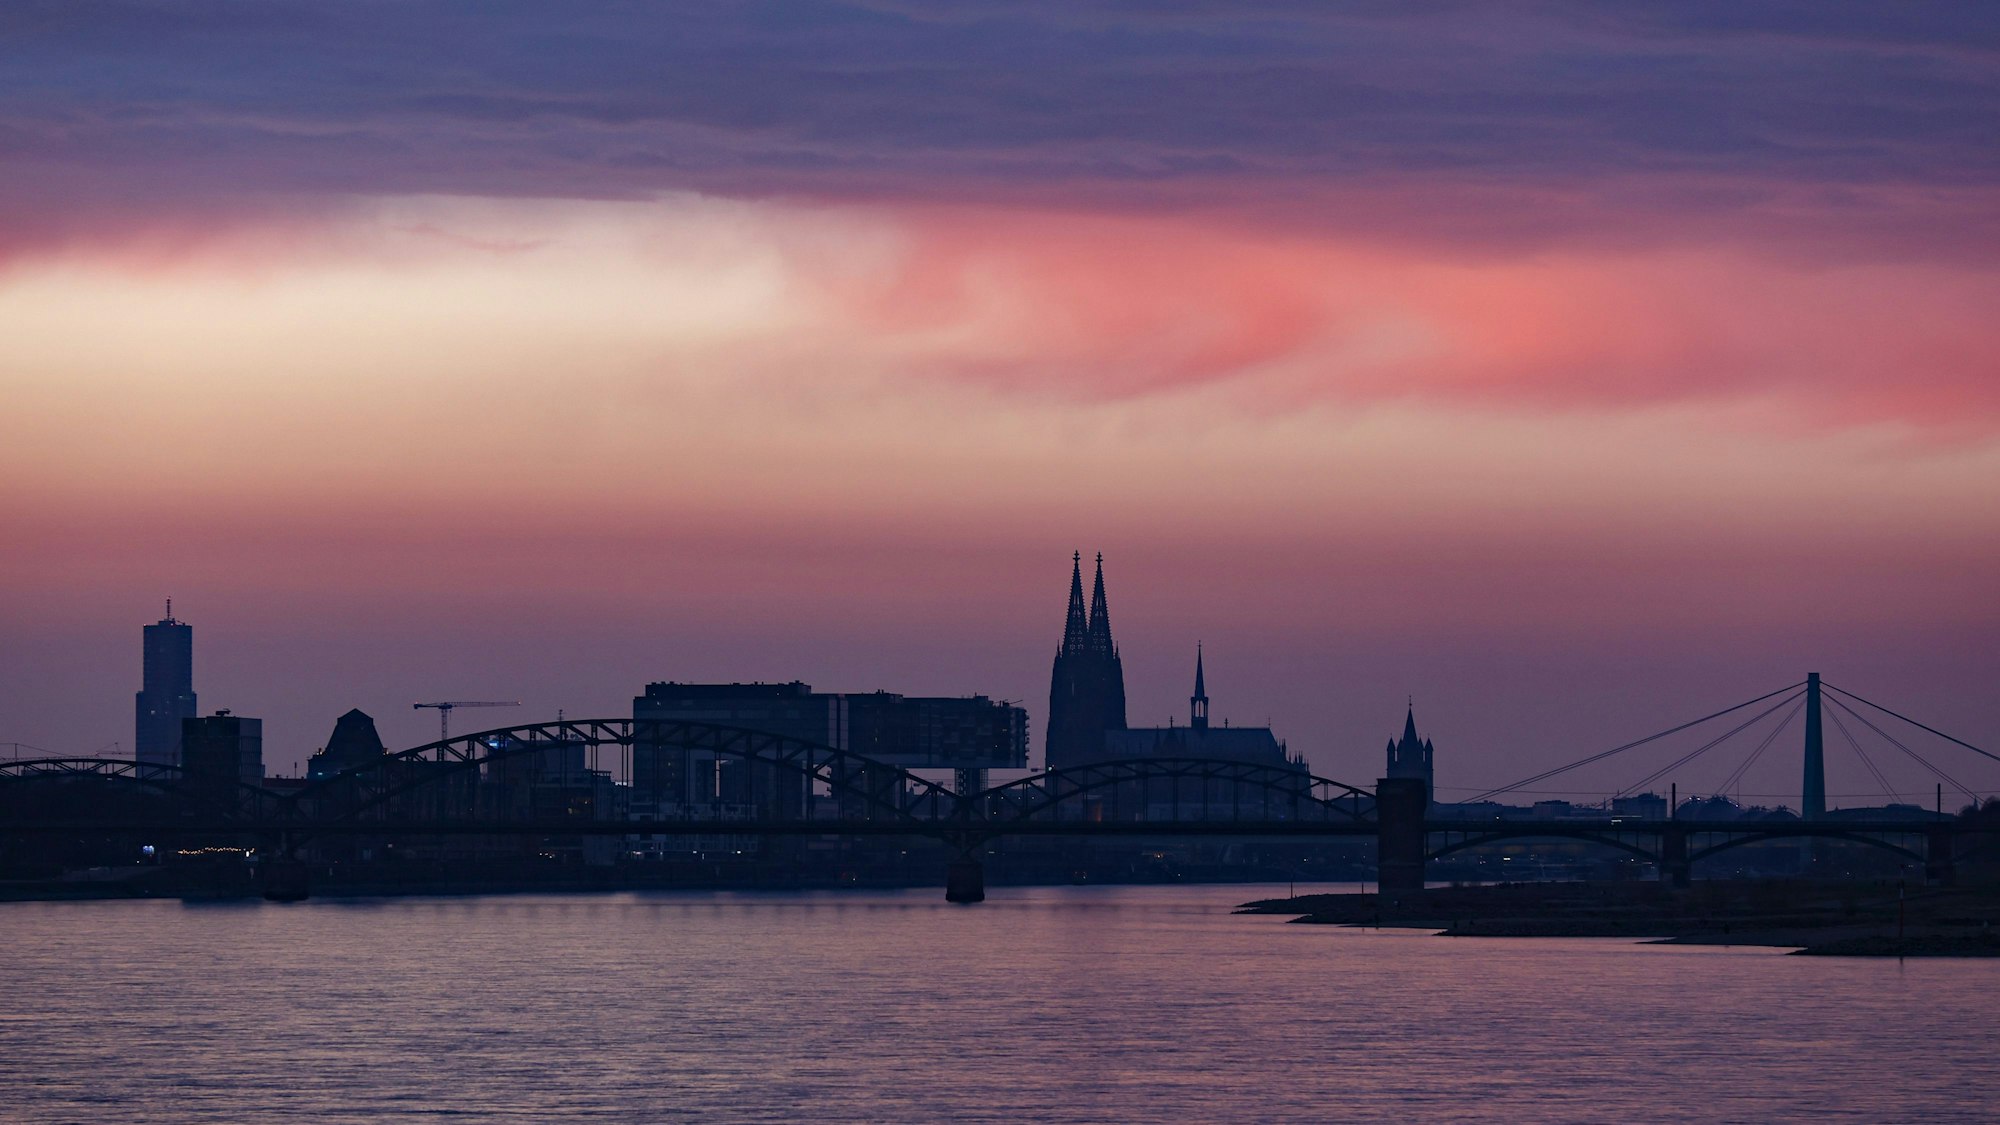 Das Bild zeigt die Skyline Kölns mit rötlichem Sonnenuntergang.